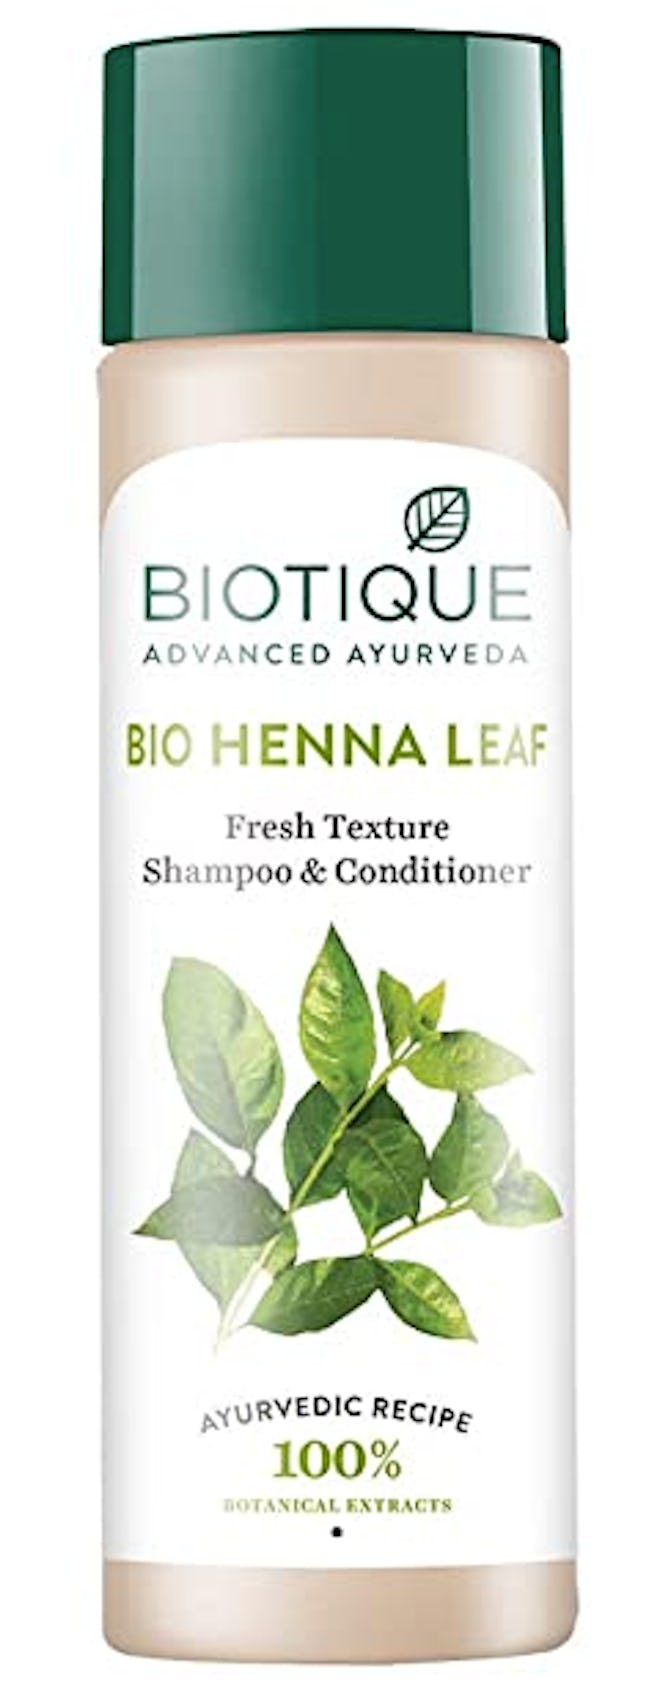 Biotique Bio Henna Leaf Fresh Texture Shampoo & Conditioner (120 Grams)